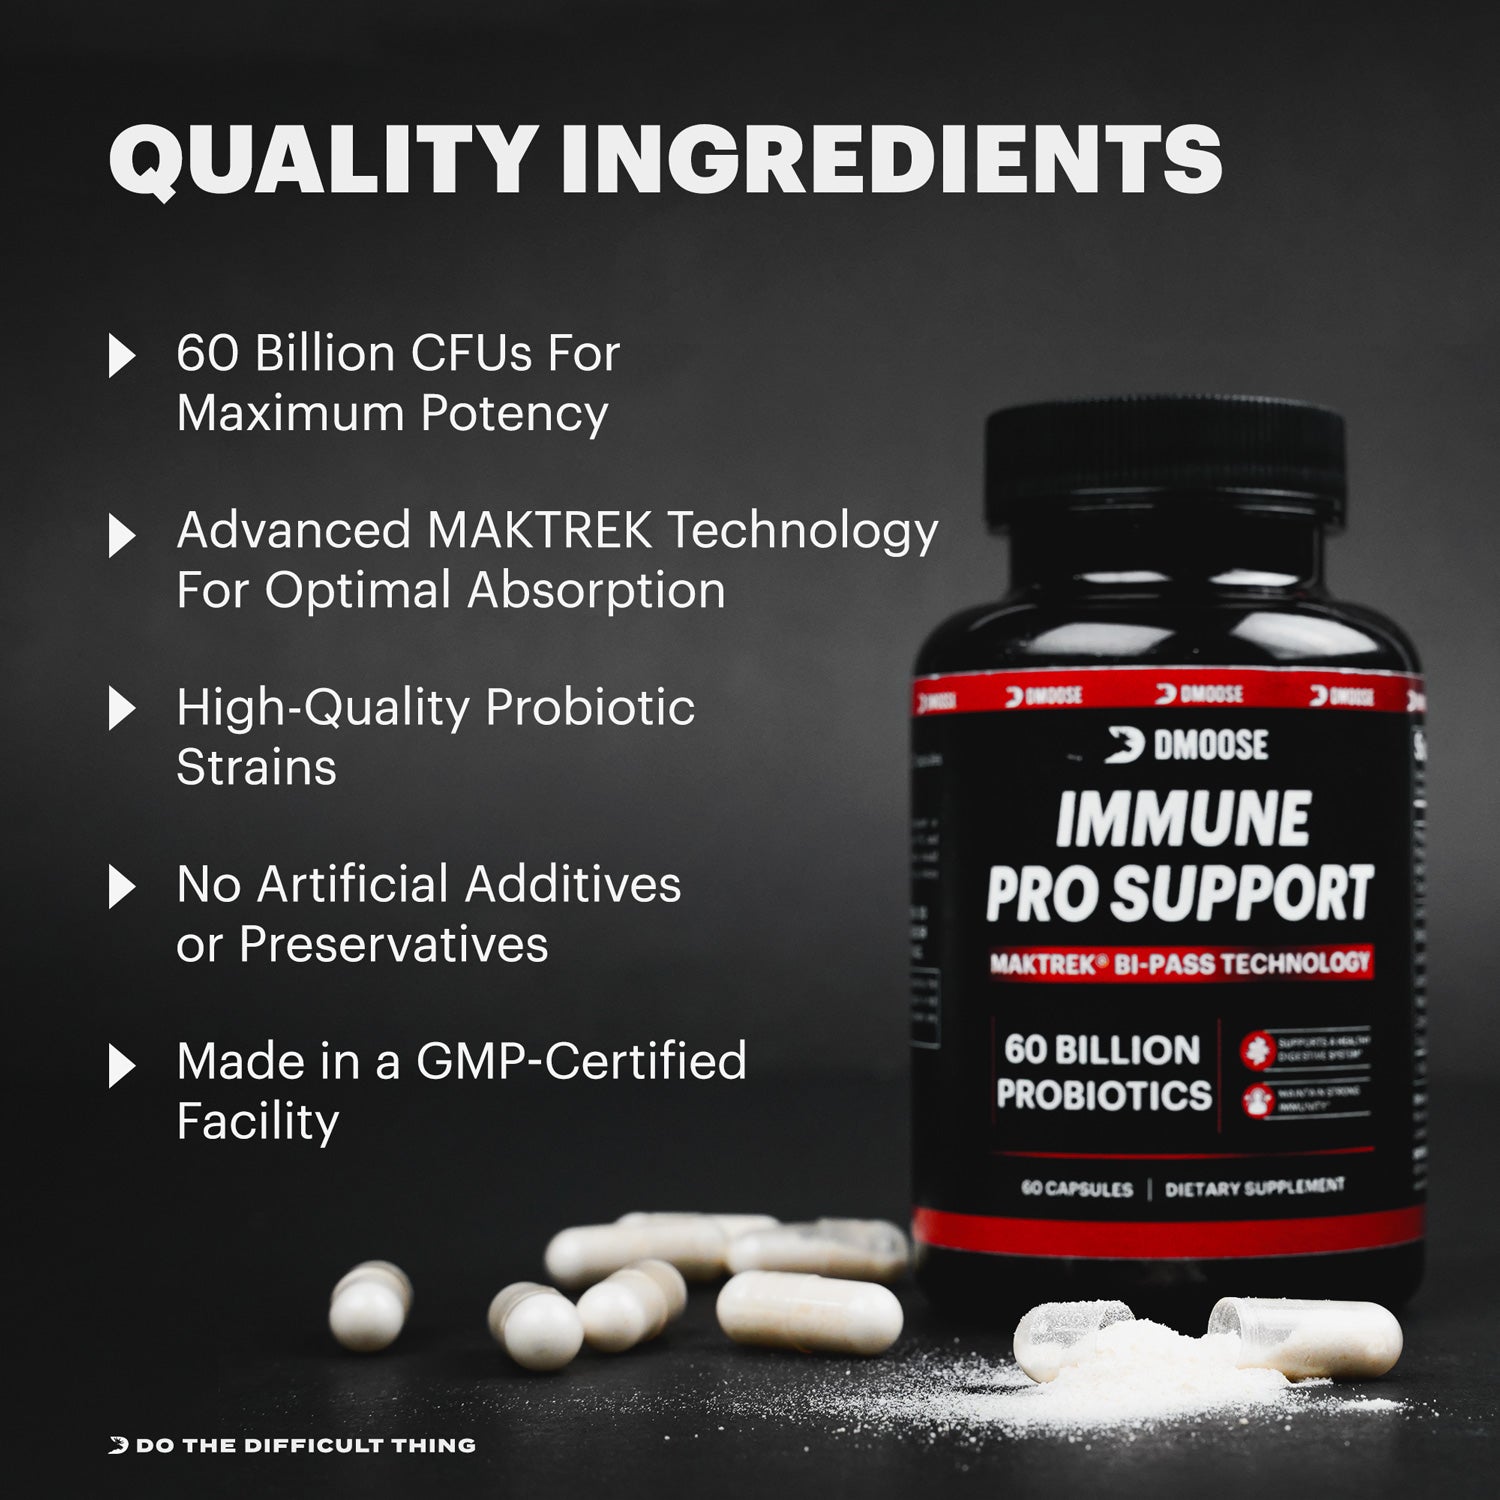 Immune Pro Support - 60 Billion CFU Probiotics